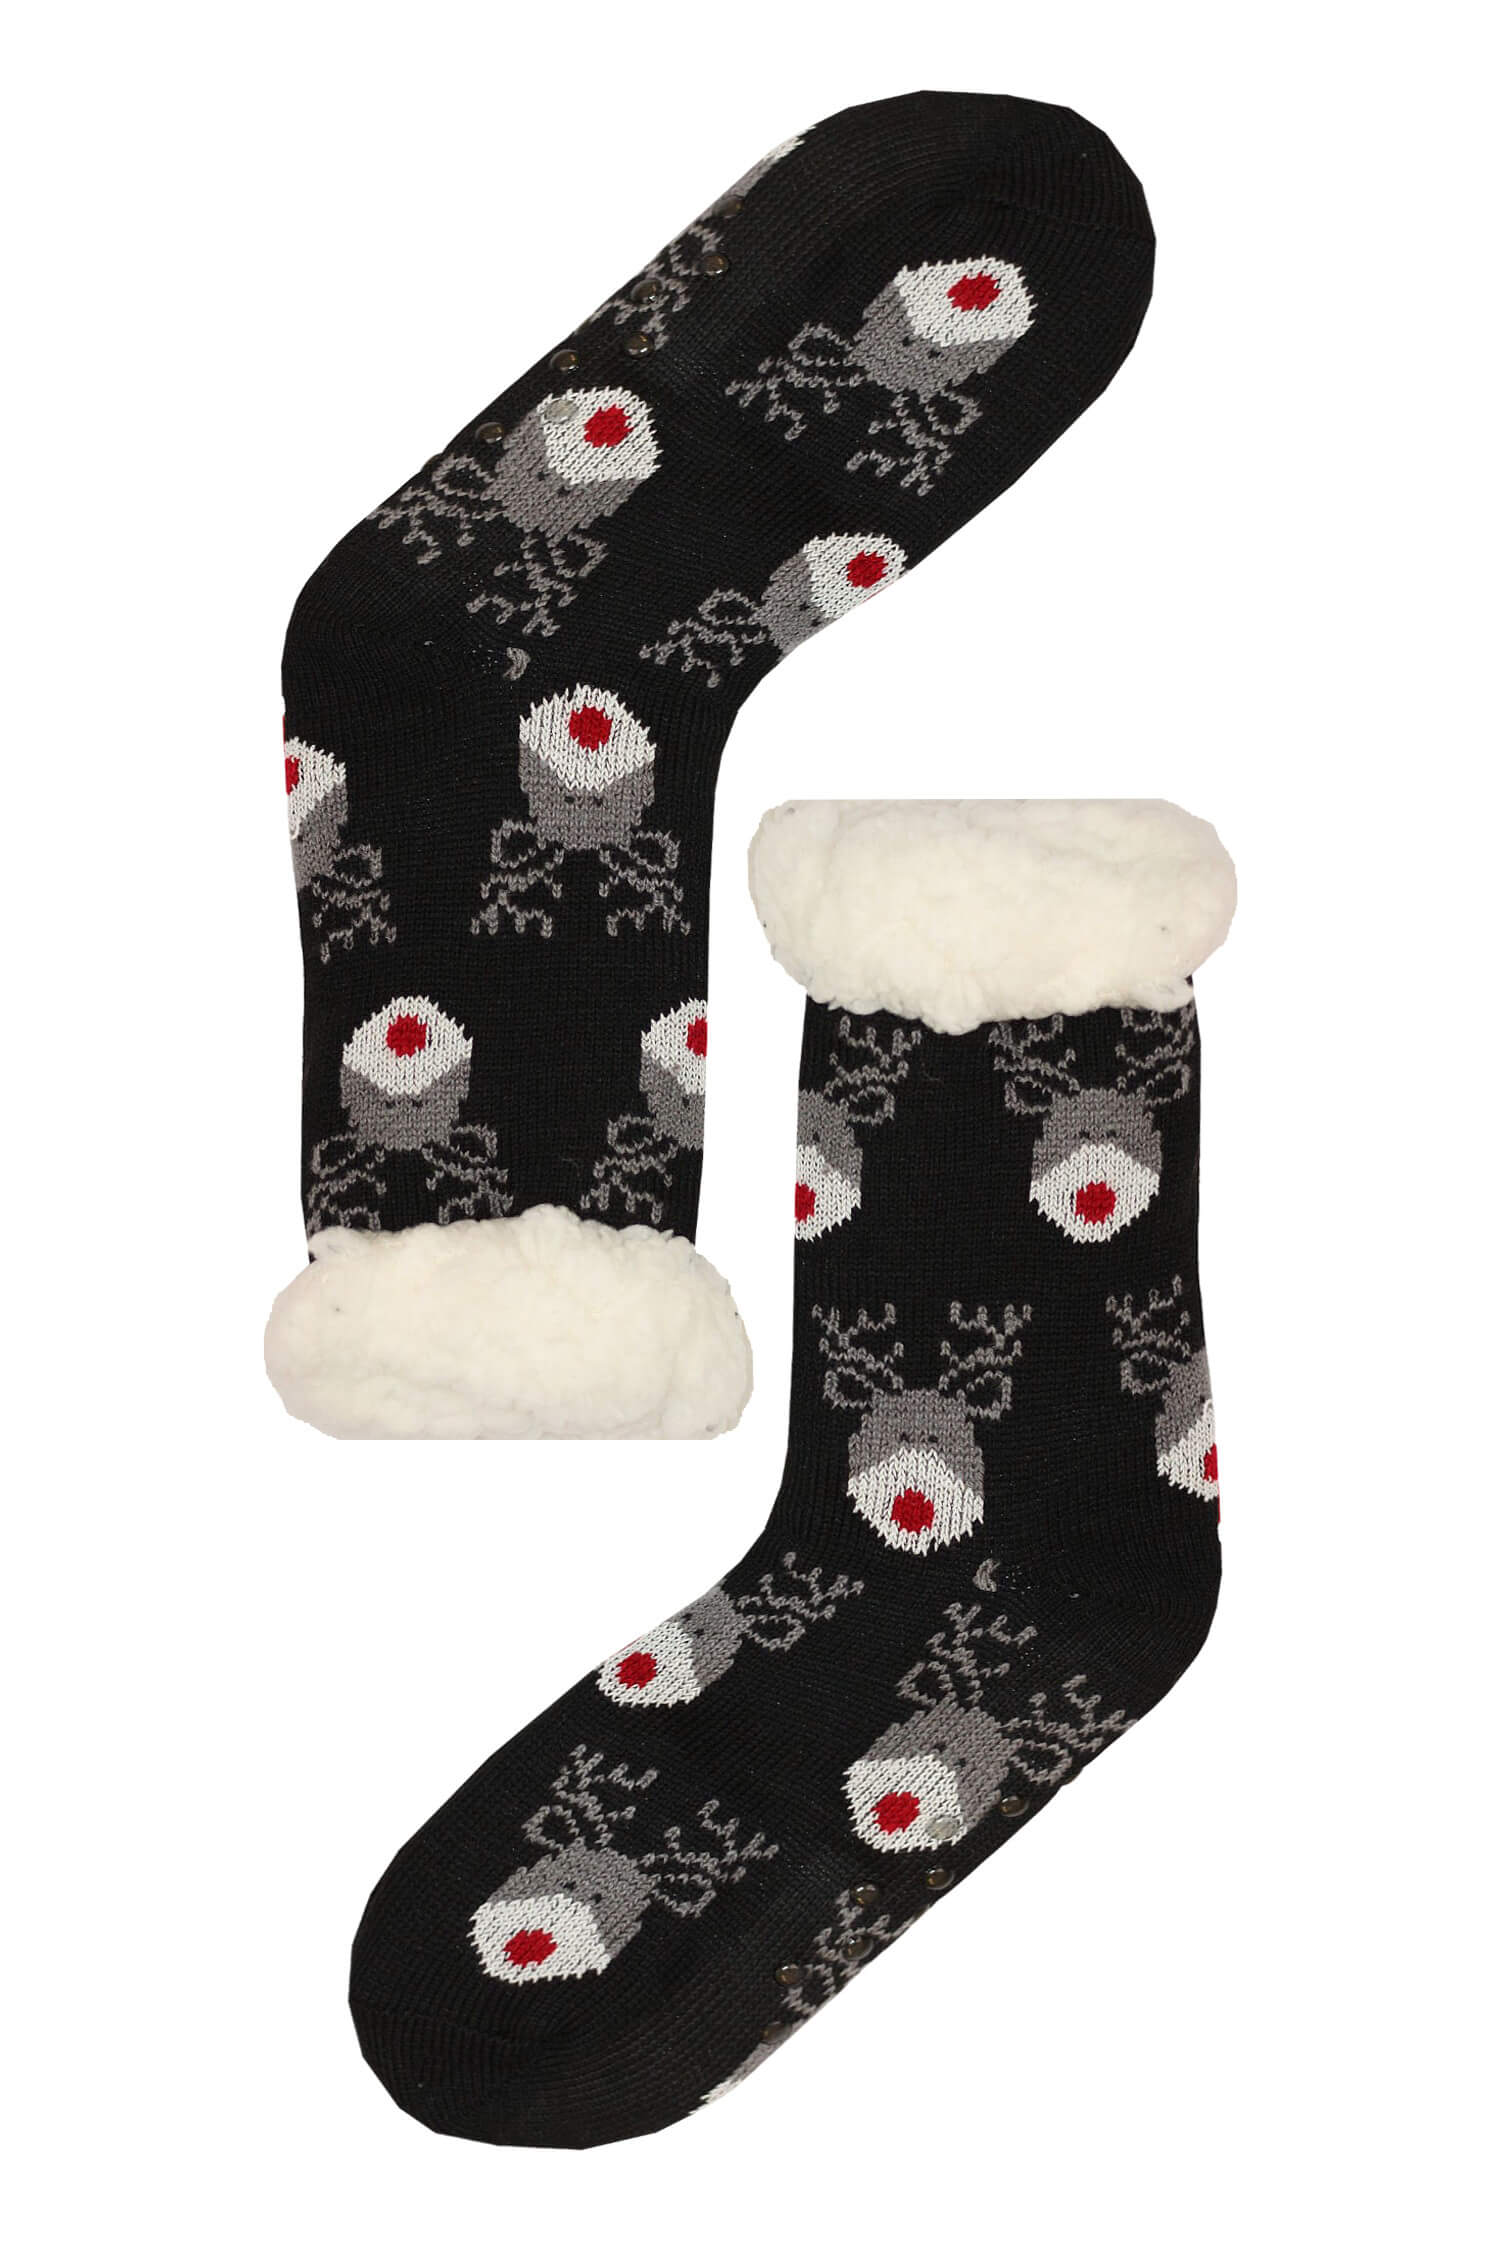 Mounty black hřejivé ponožky beránek WW058 38-42 černá